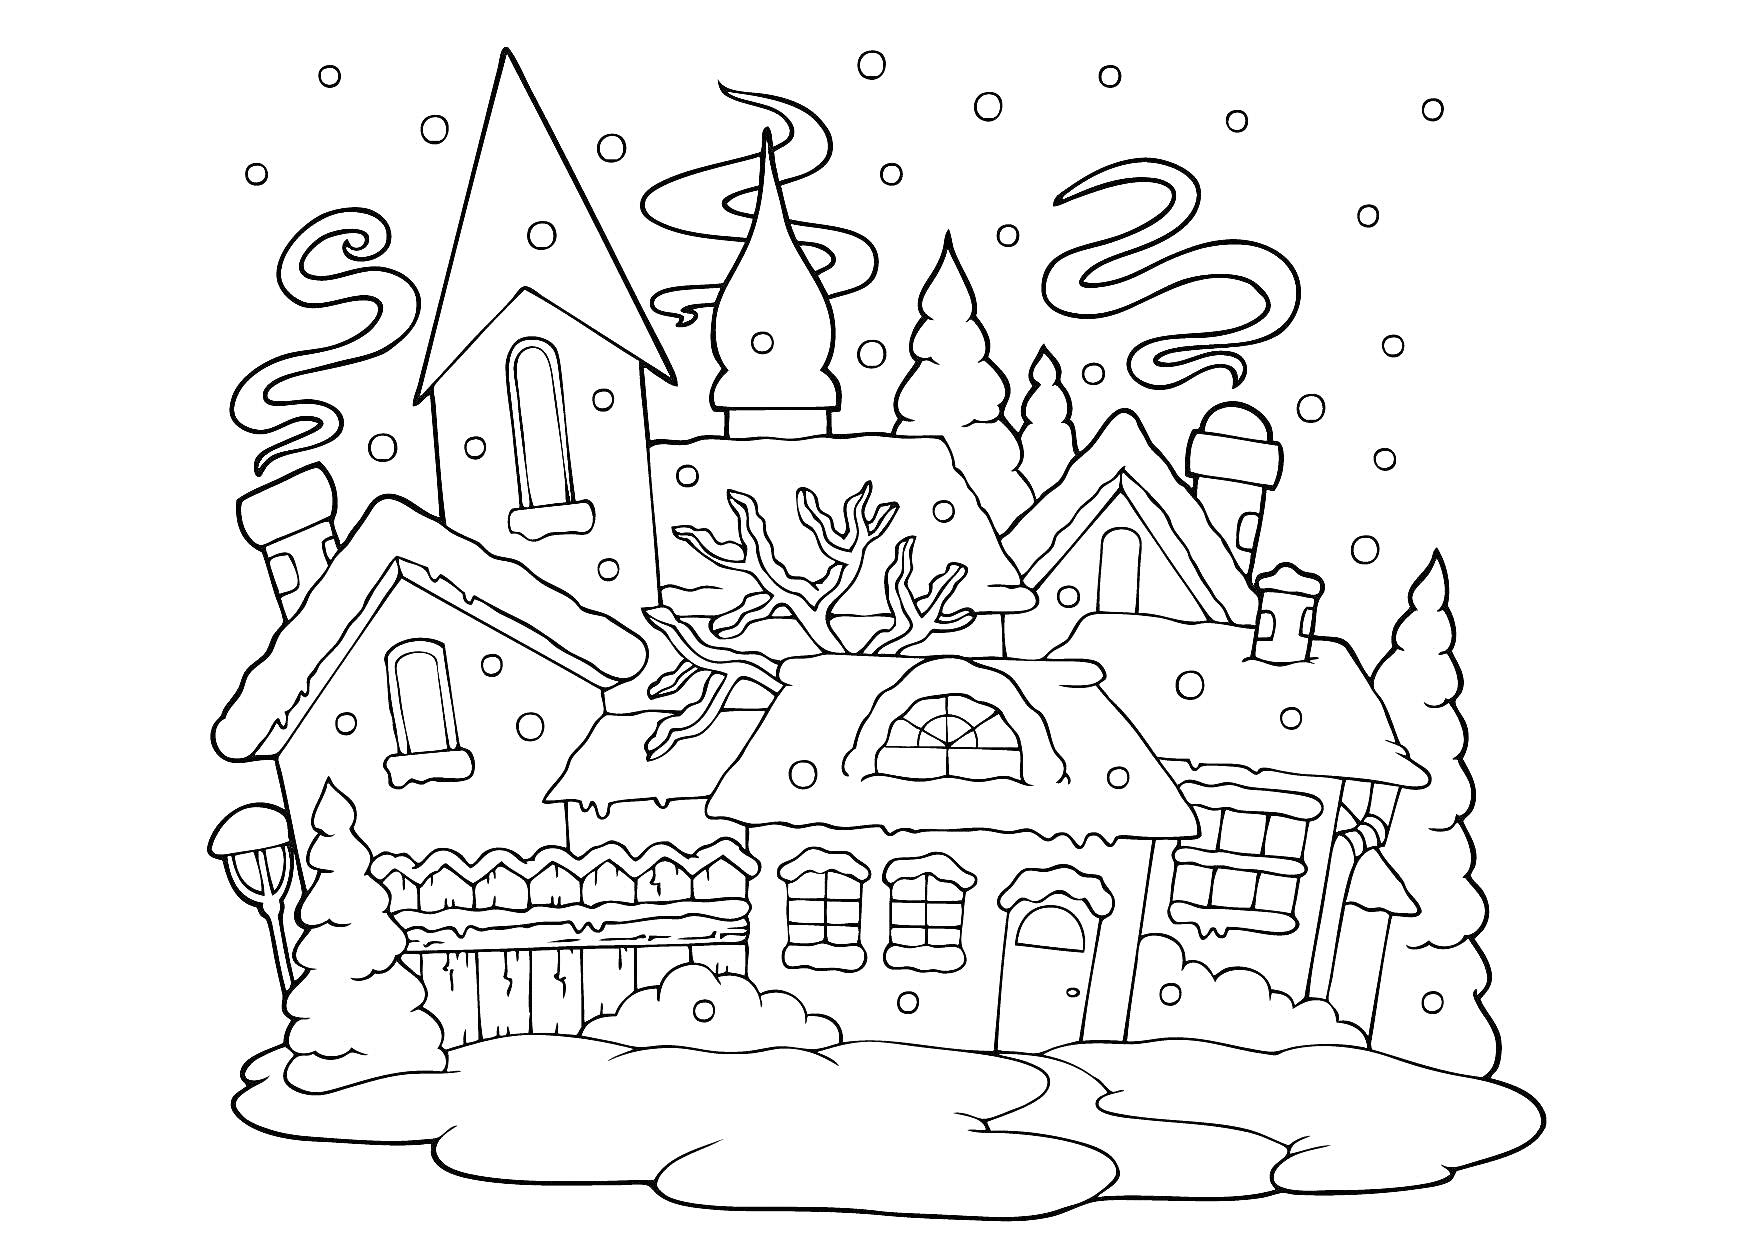 Раскраска Зимний город с домами, снежным покровом и падающими снежинками